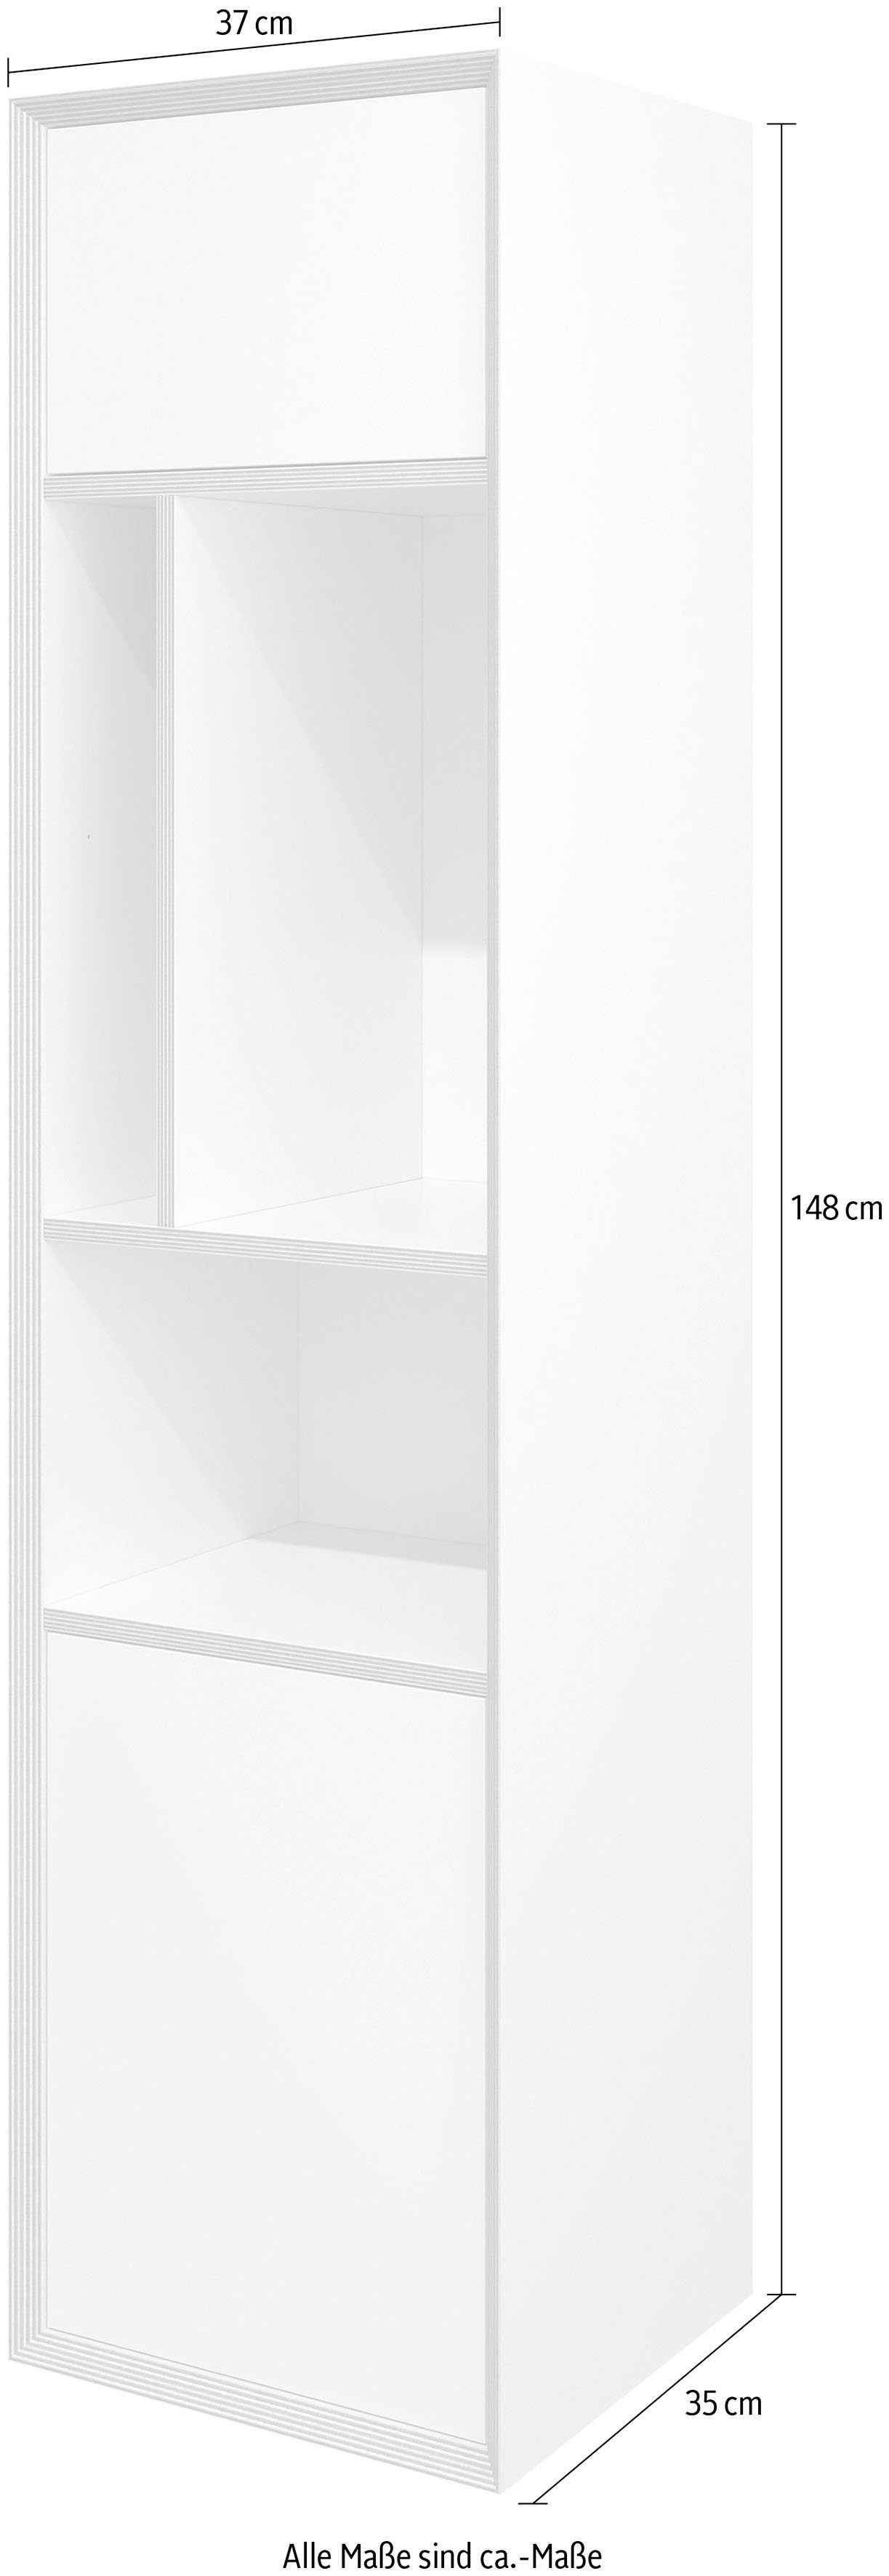 Müller SMALL LIVING Mehrzweckschrank »VERTICO VERTICAL TWO« Hochschrank passend zur Serie Vertiko, optimal zum Bau einer kombinierten Wohnwand-Otto